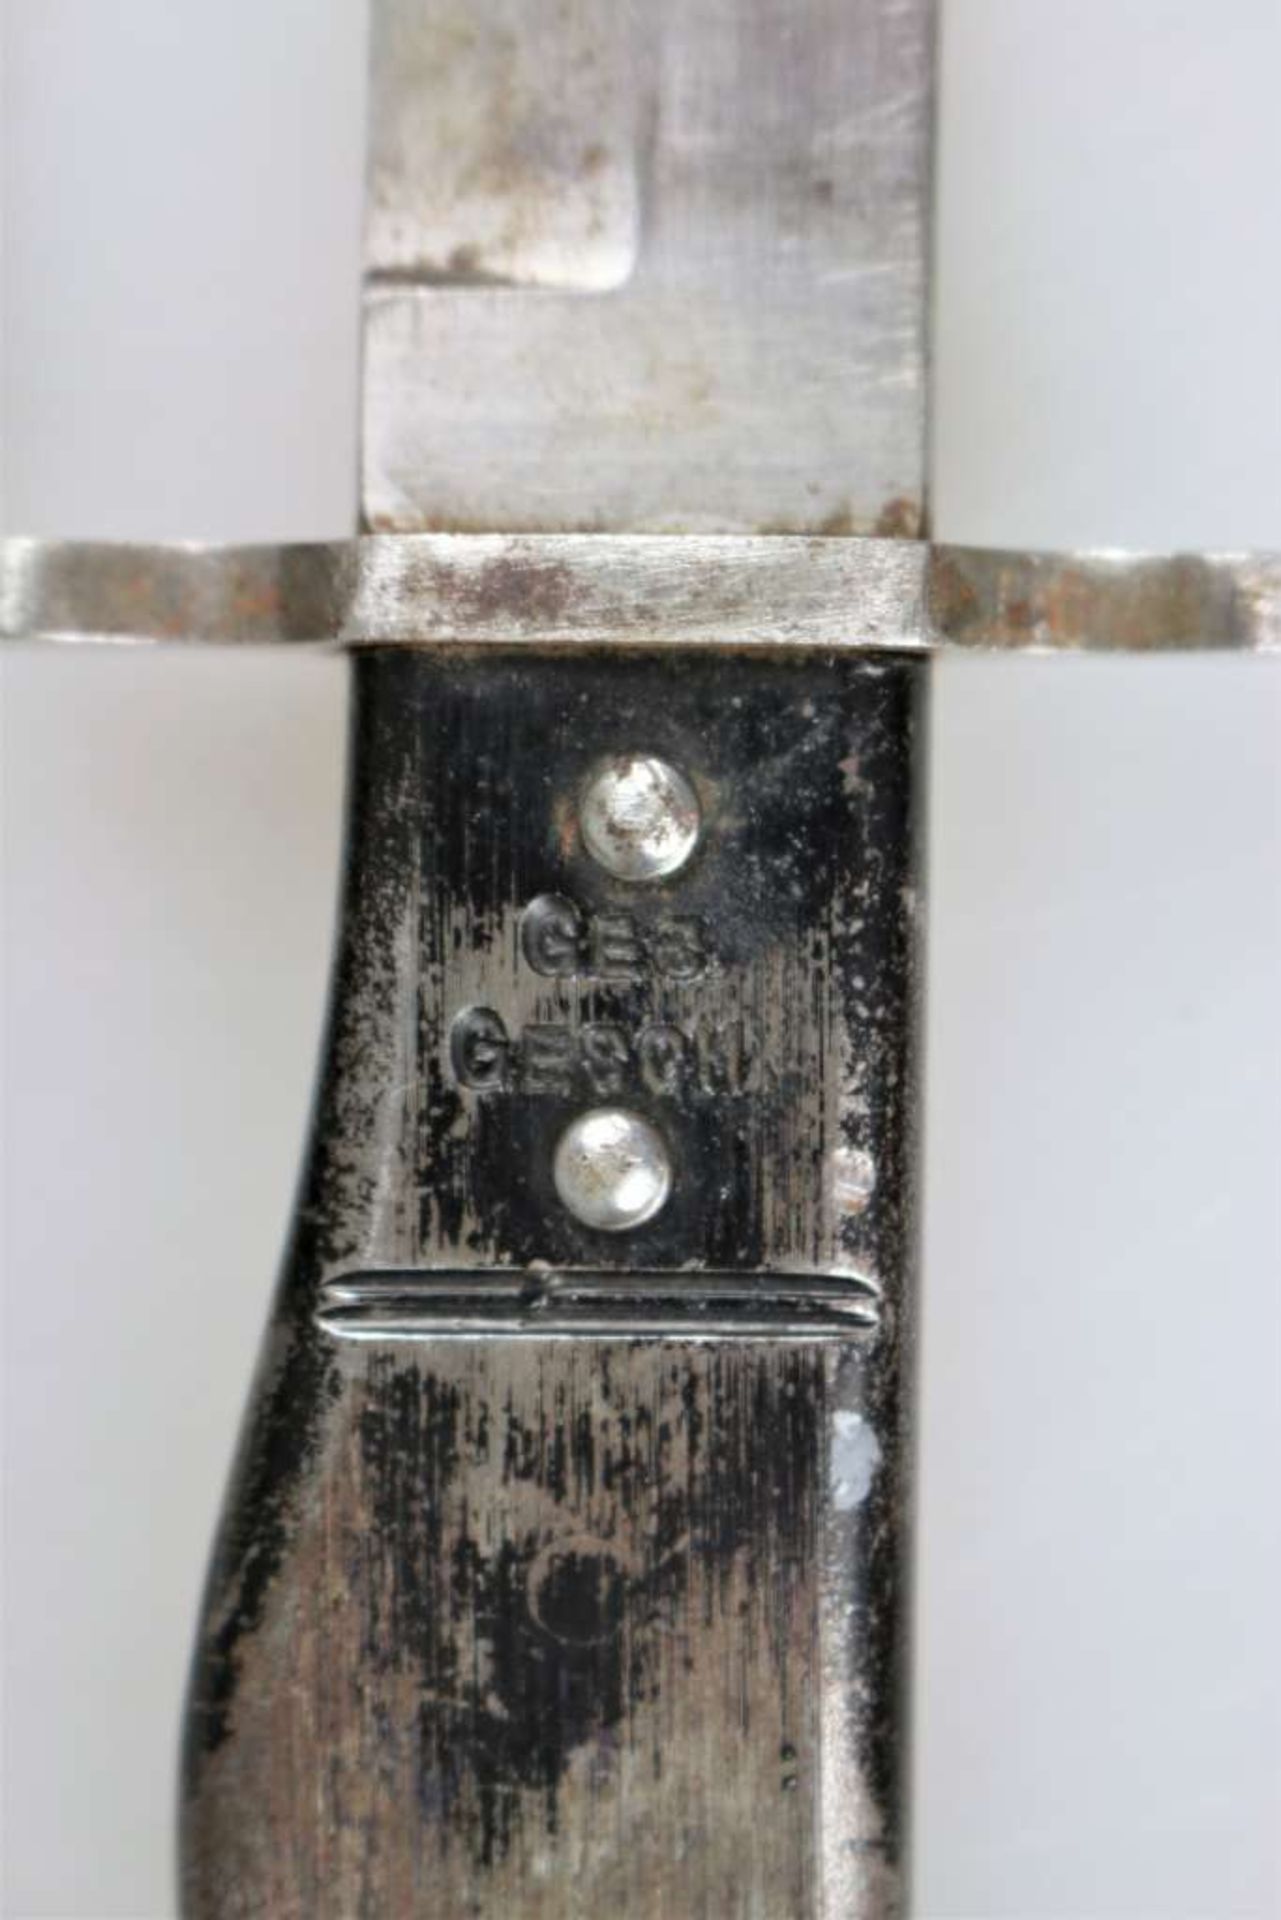 Grabendolch ersten Weltkrieg, vernieteter Metallgriff, gestempelt "Ges. Gesch". Einschneidige Klinge - Bild 4 aus 4